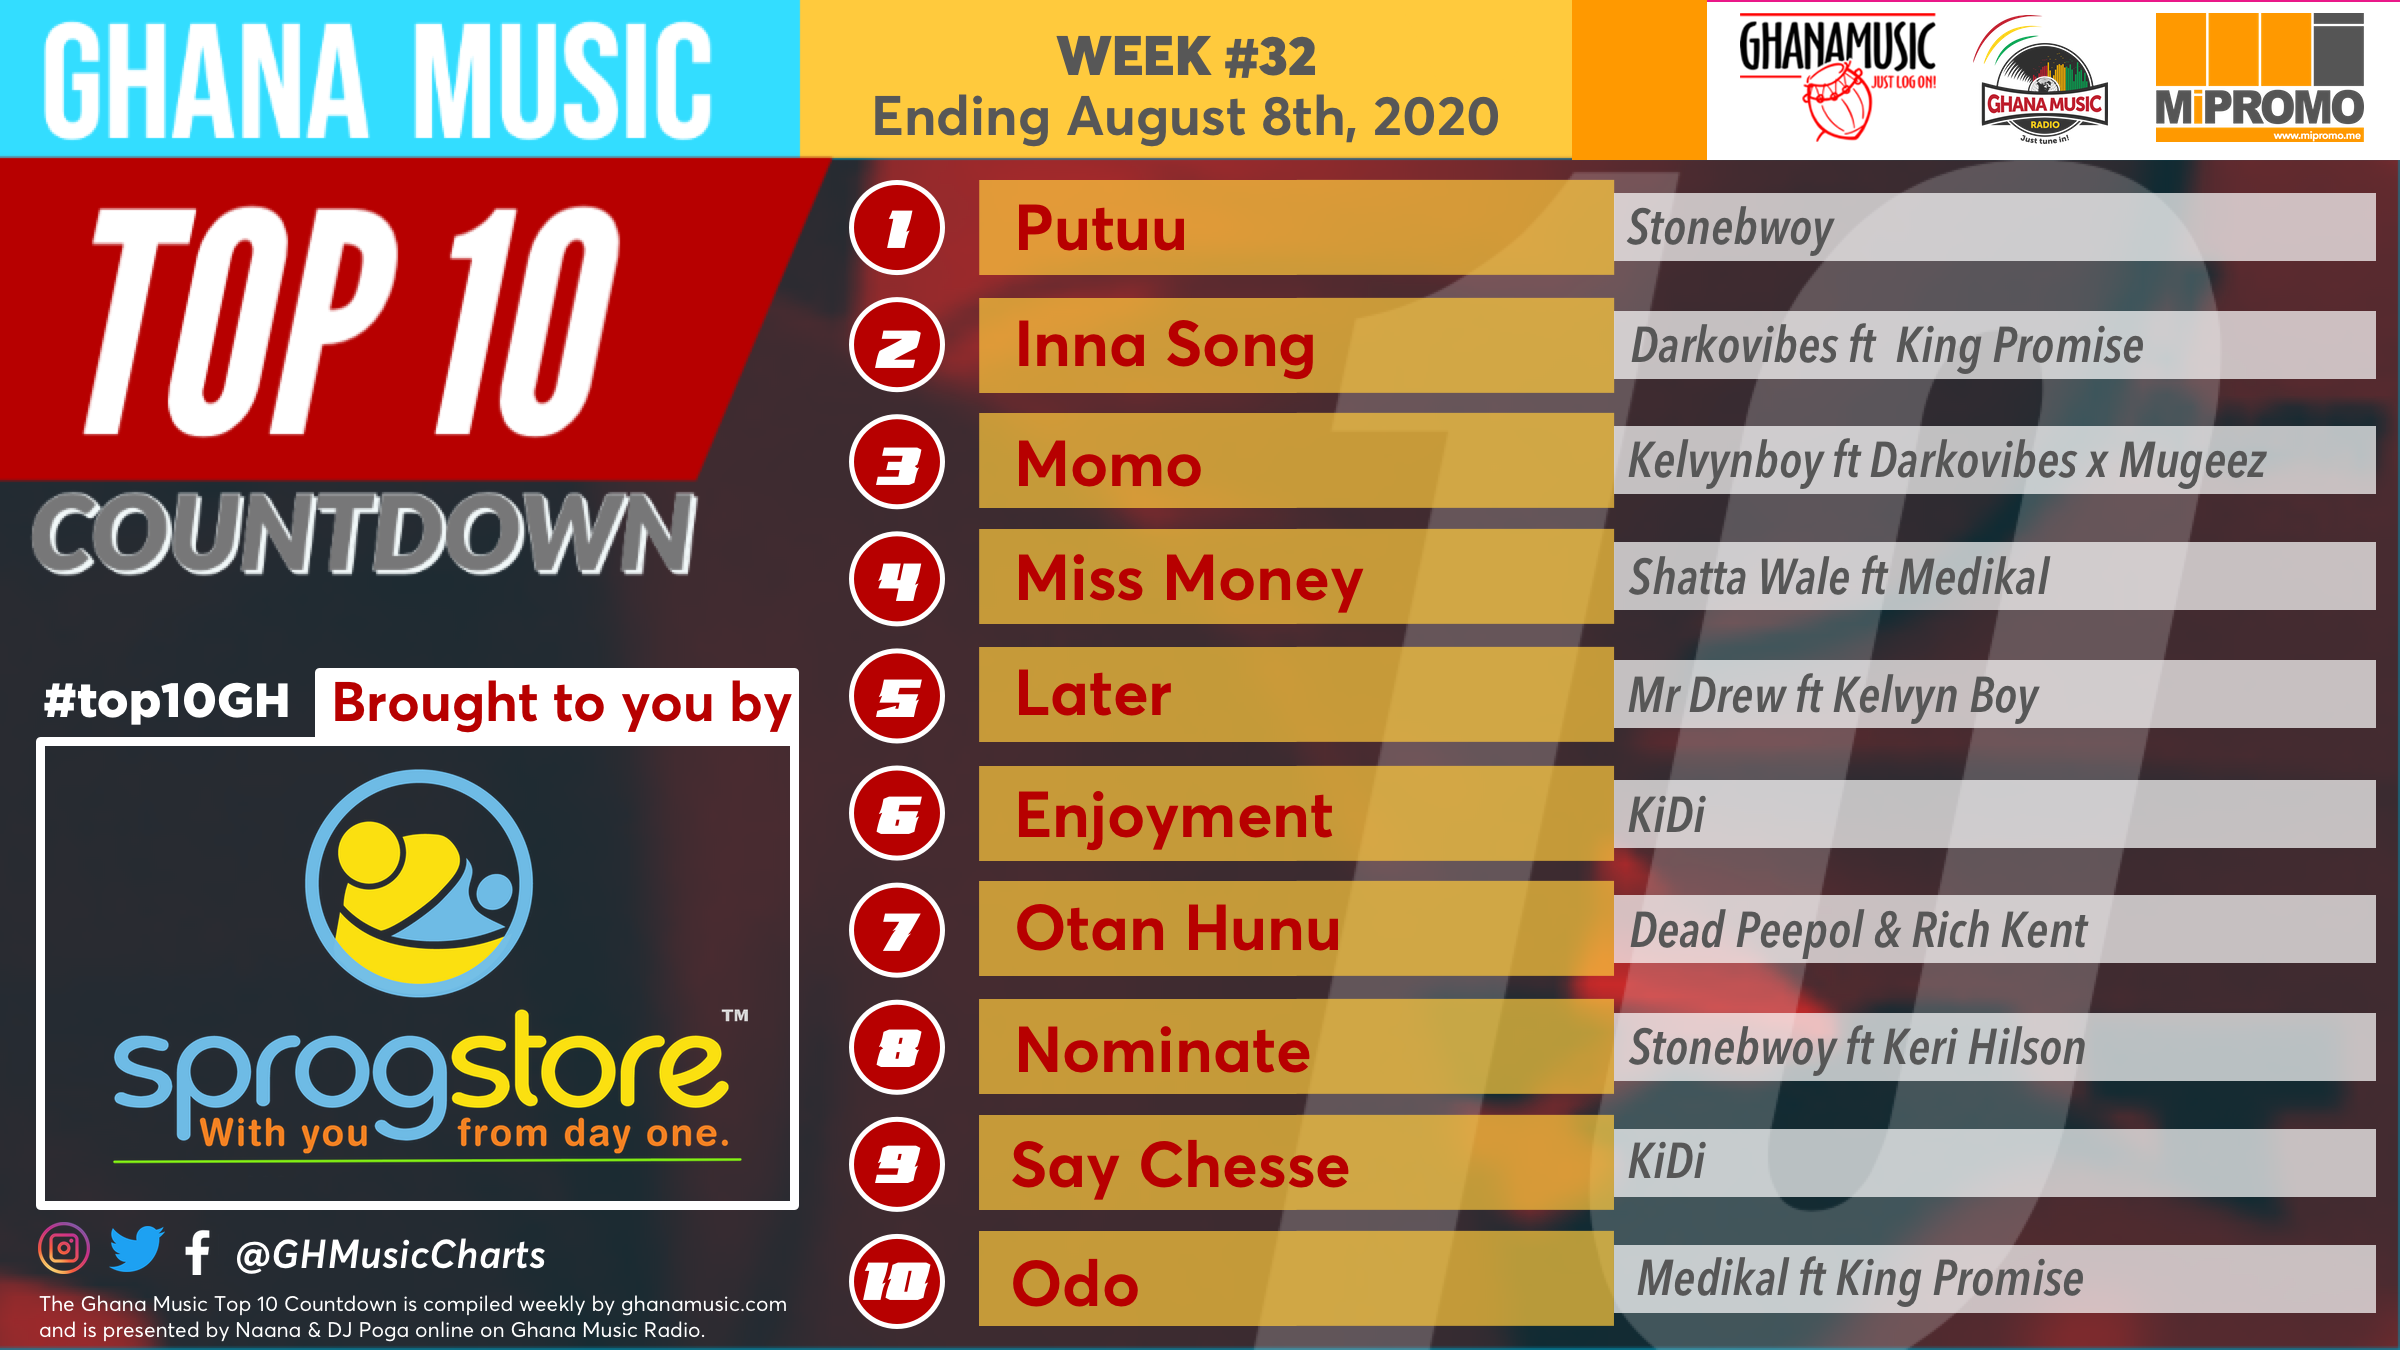 2020 Week 32: Ghana Music Top 10 Countdown